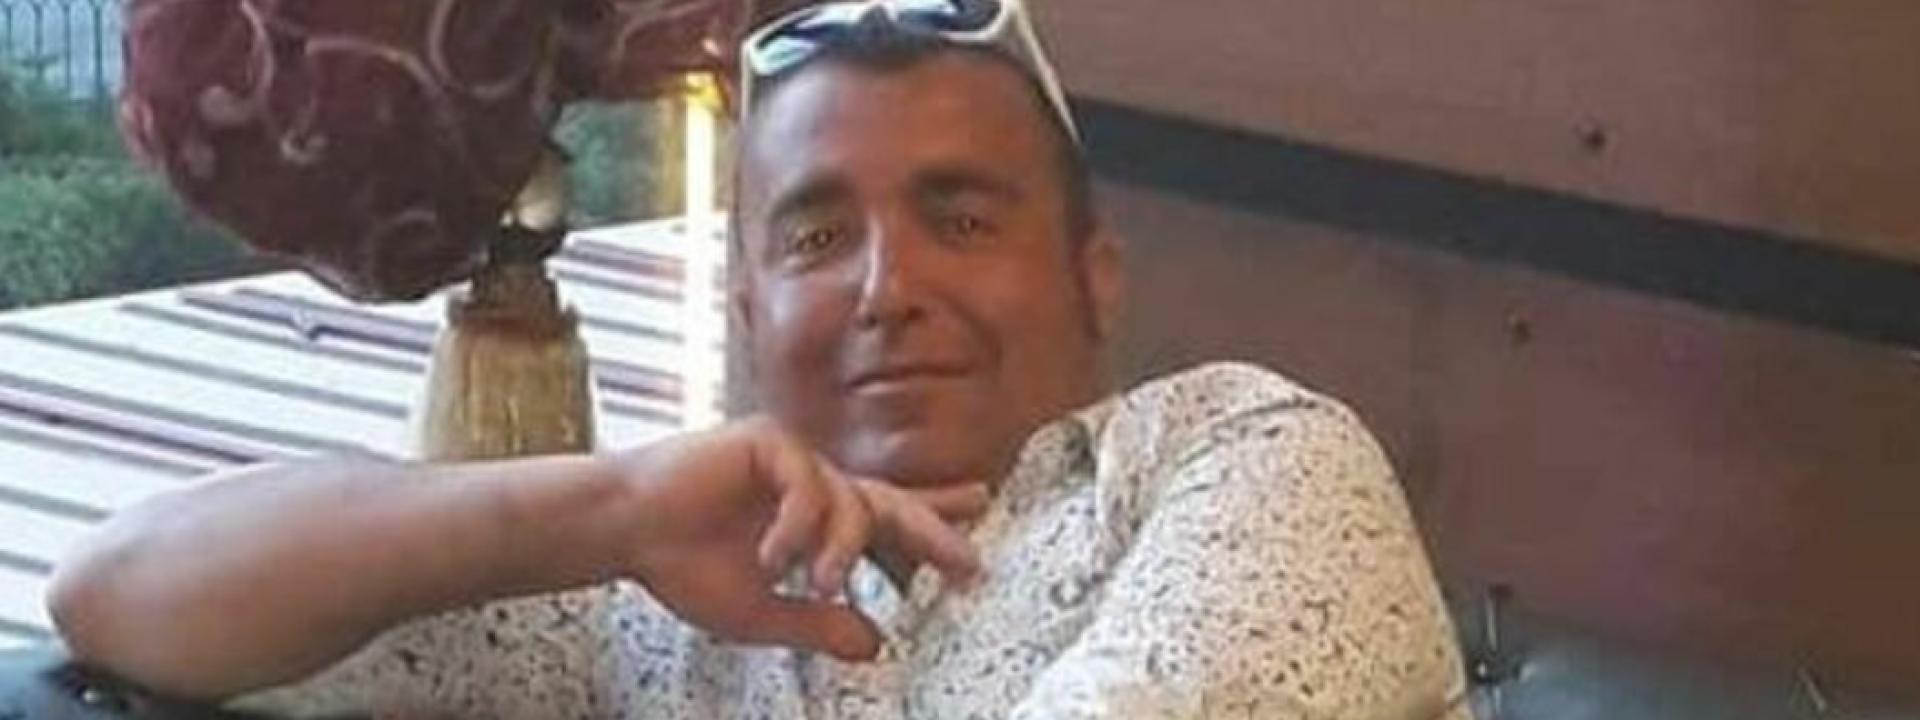 Marche - Macerata, muore a 44 anni mentre aspetta di essere ricoverato